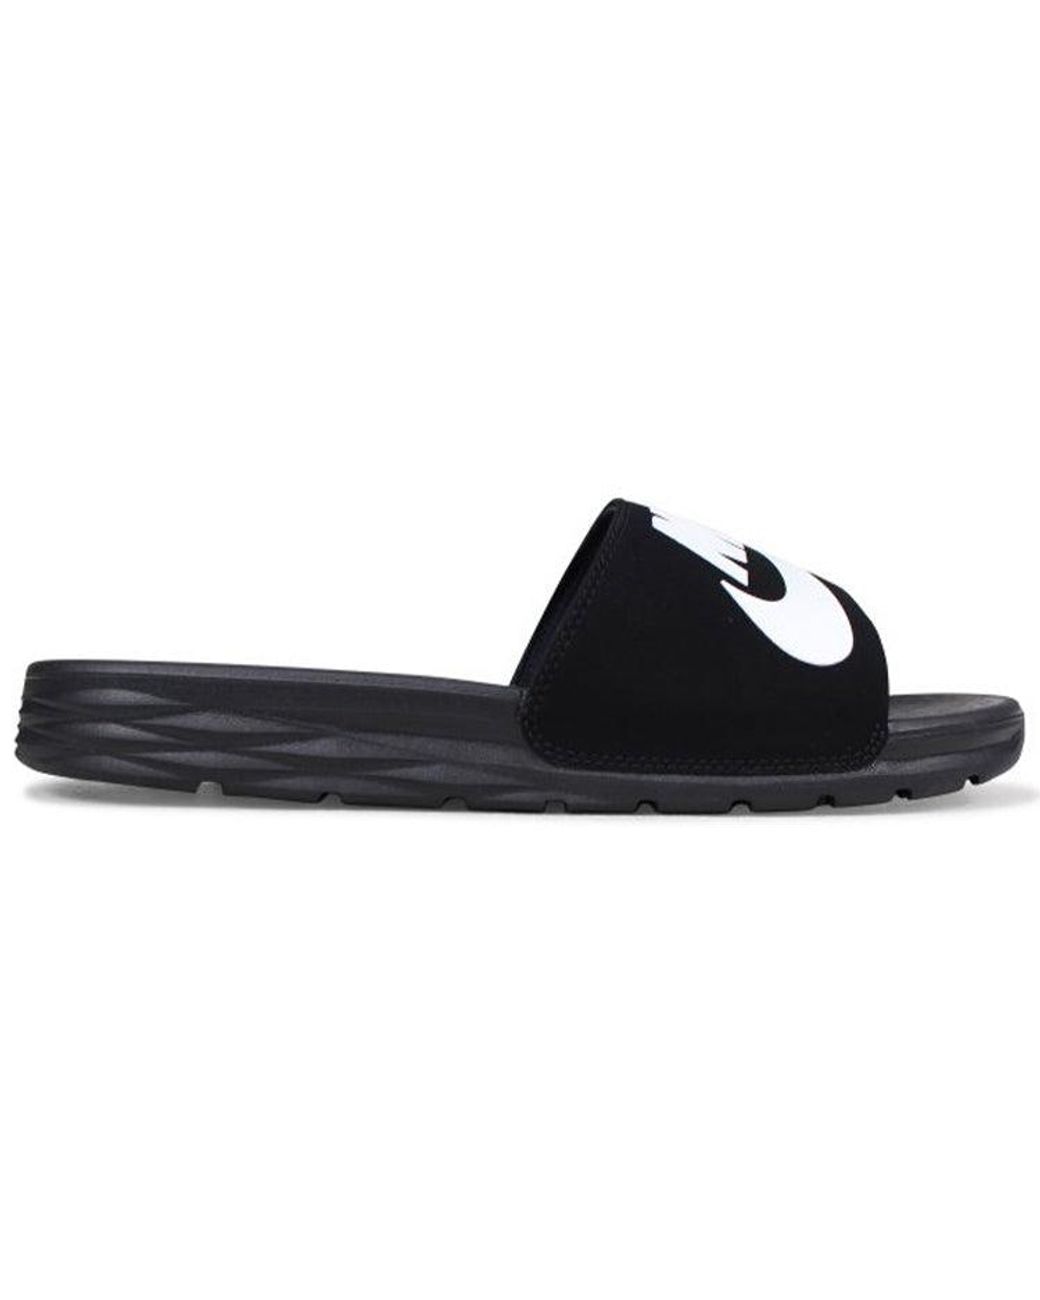 domein lening mythologie Nike Sandals Sports Slippers in Black for Men | Lyst